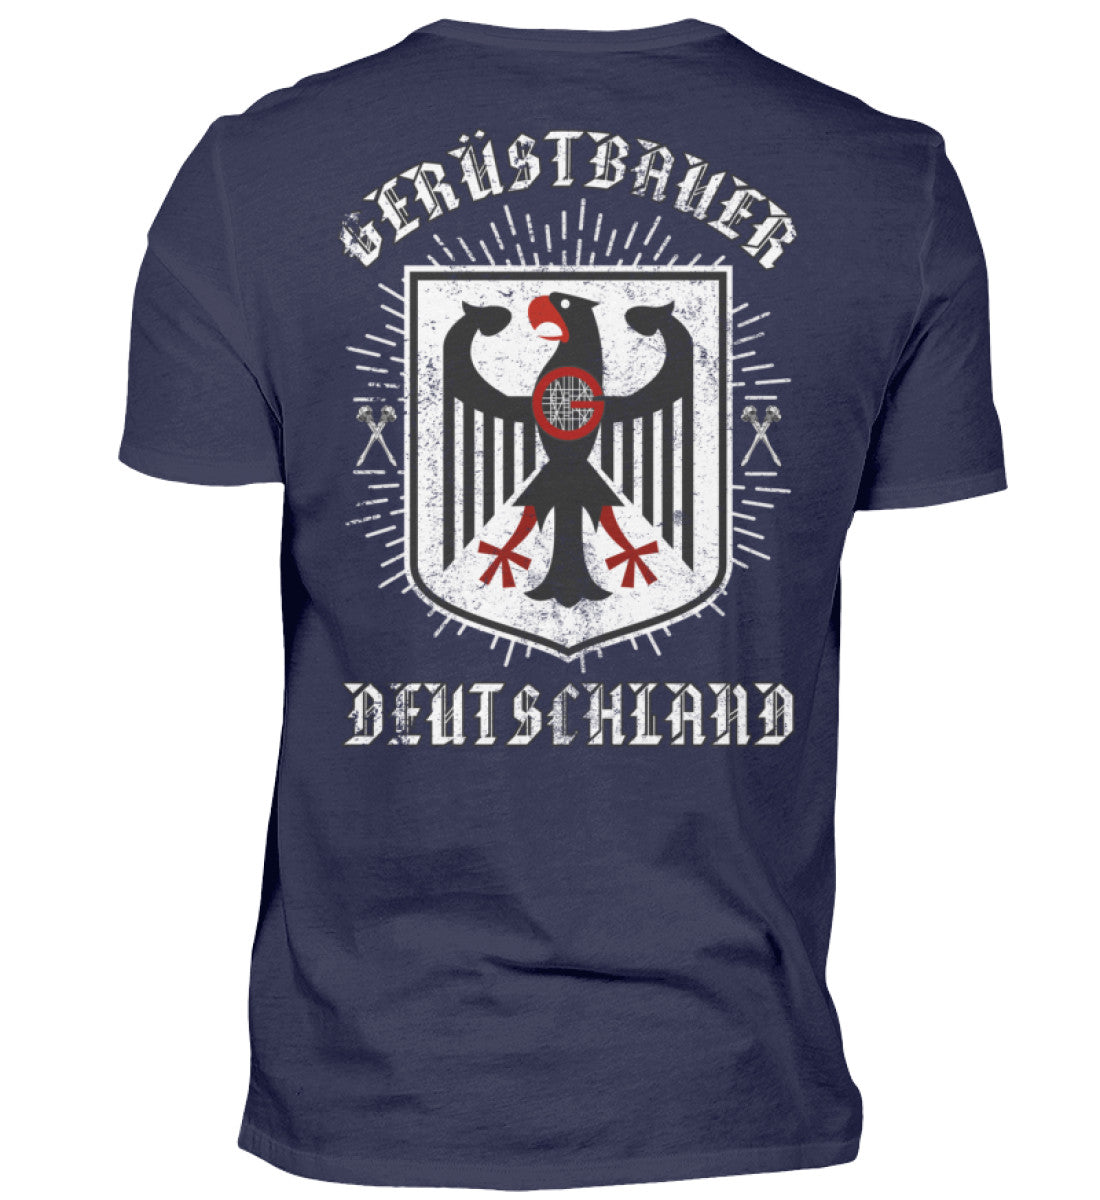 Gerüstbauer T-Shirt Deutschland €24.95 Gerüstbauer - Shop >>